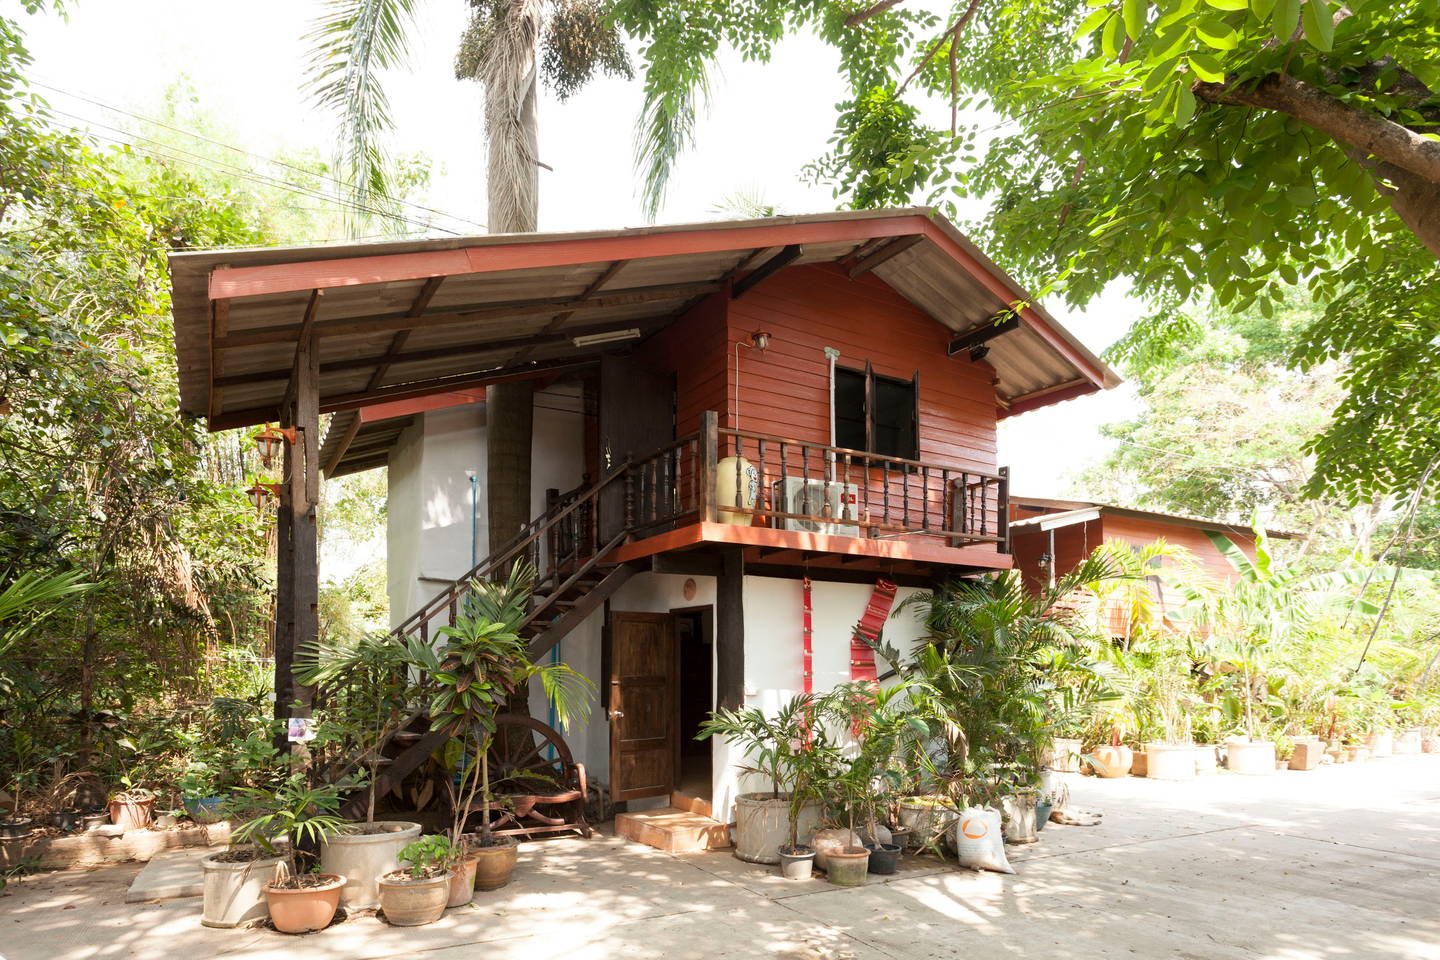 บ้านสองชั้น กึ่งปูนกึ่งไม้ บรรยกาศอบอุ่นแบบบ้านไทยต่างจังหวัด